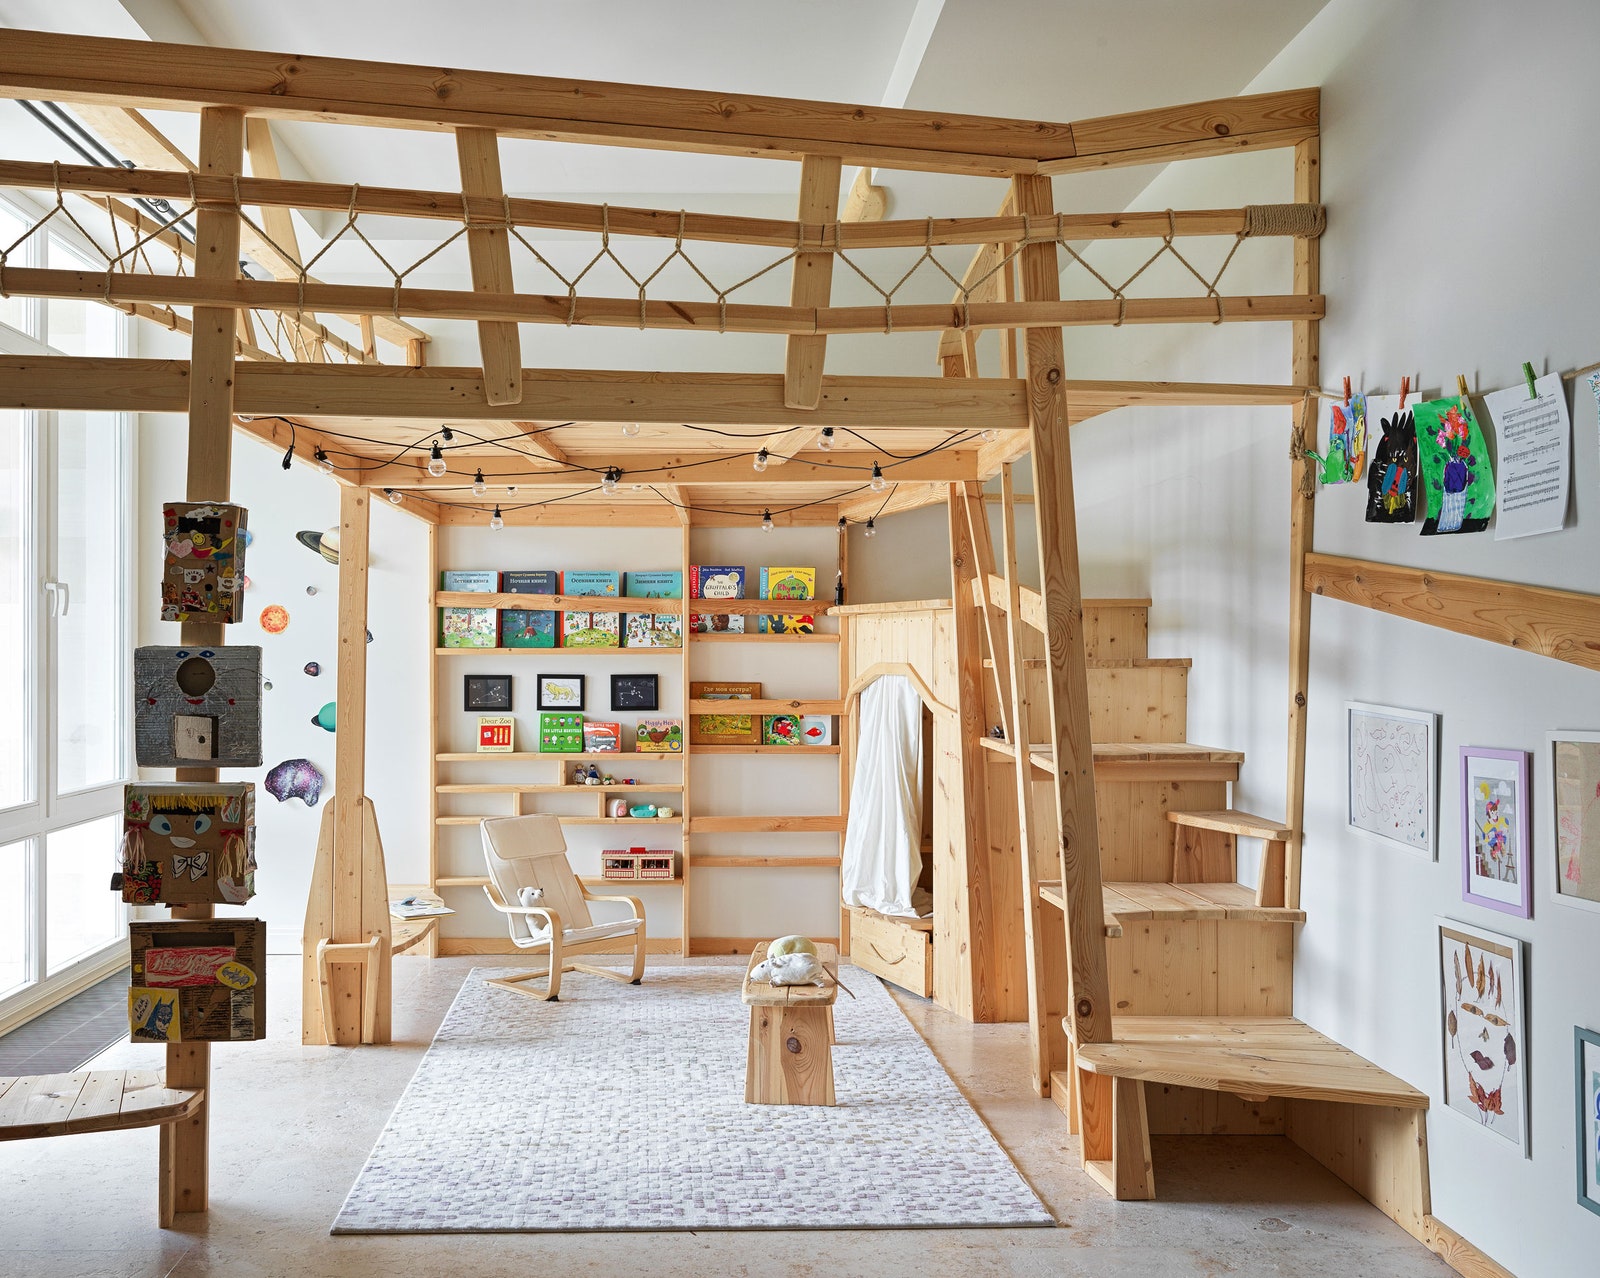 Детская комната с игровой зоной и площадка рядом с домом спроектированы Юрием Сырковым. Все элементы сделаны из дерева....